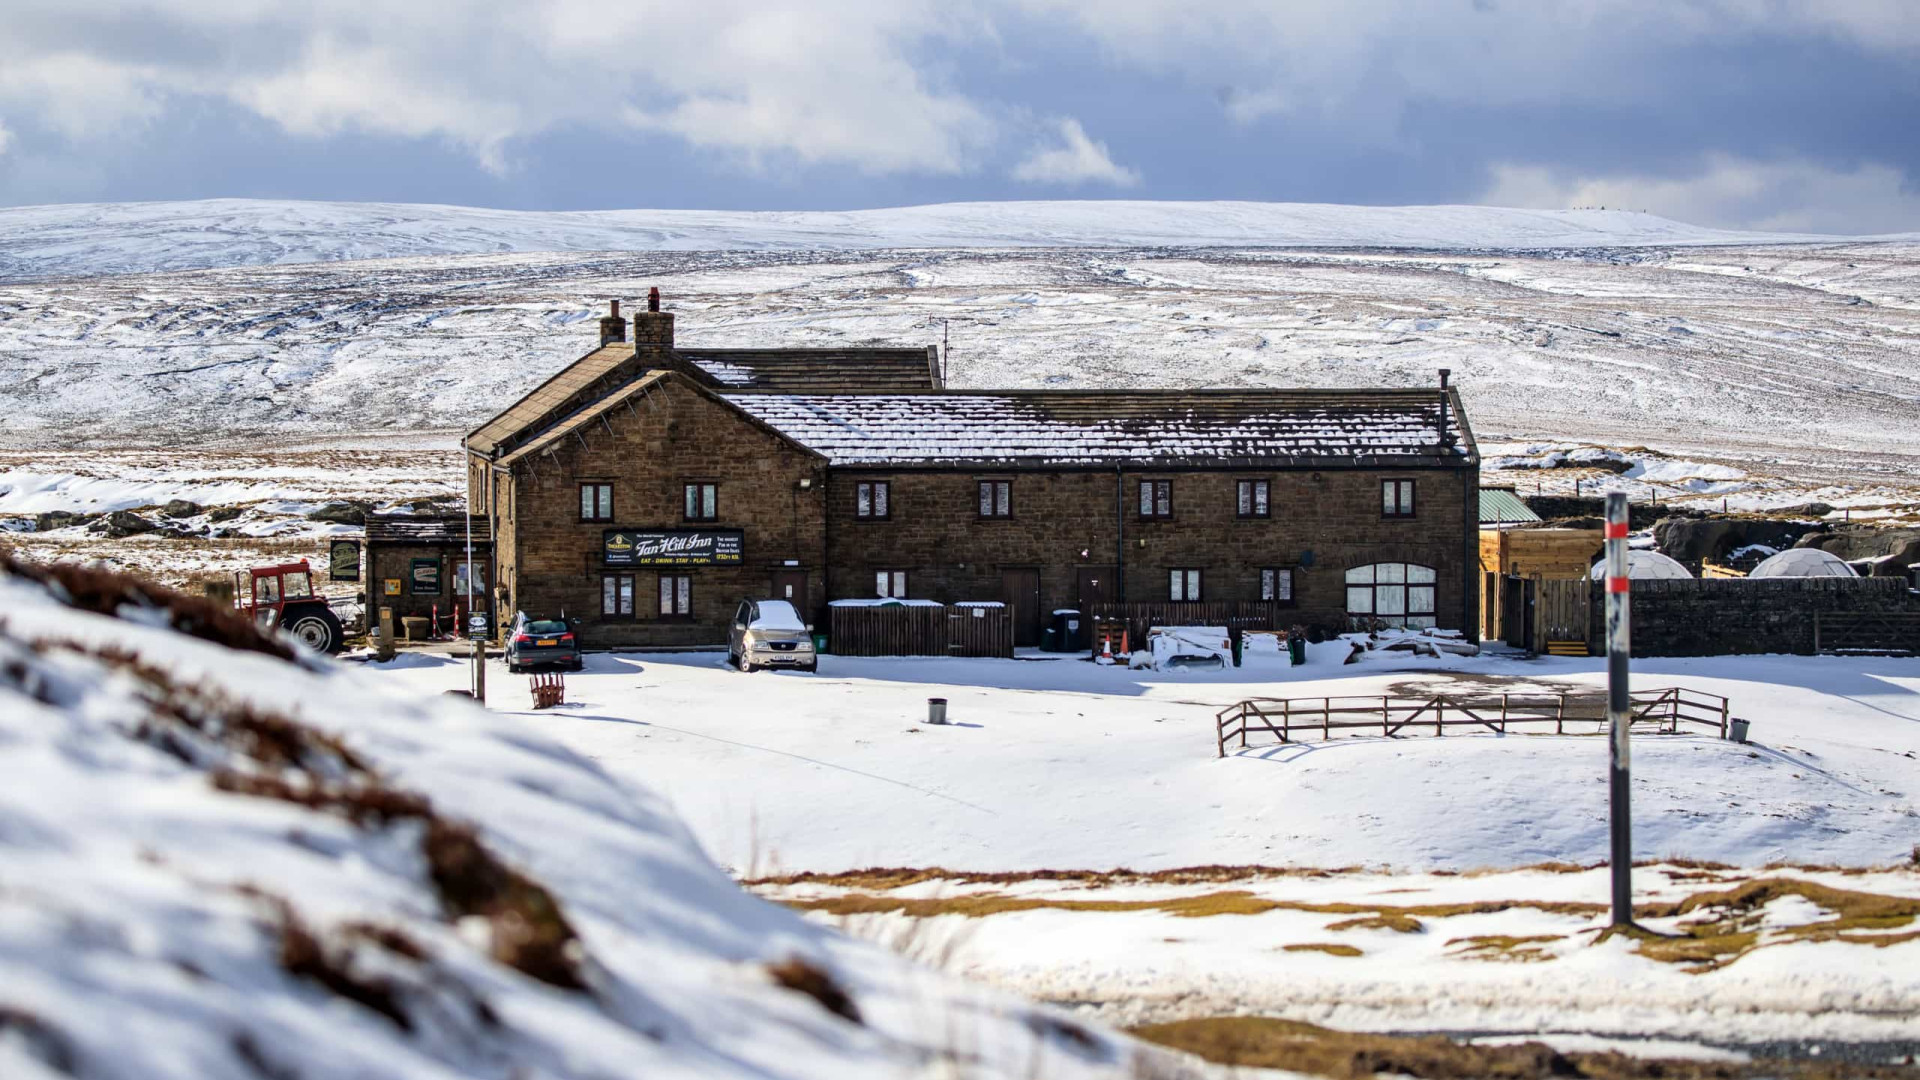 Clientes estão presos há 3 dias em pub bloqueado por nevasca no Reino Unido